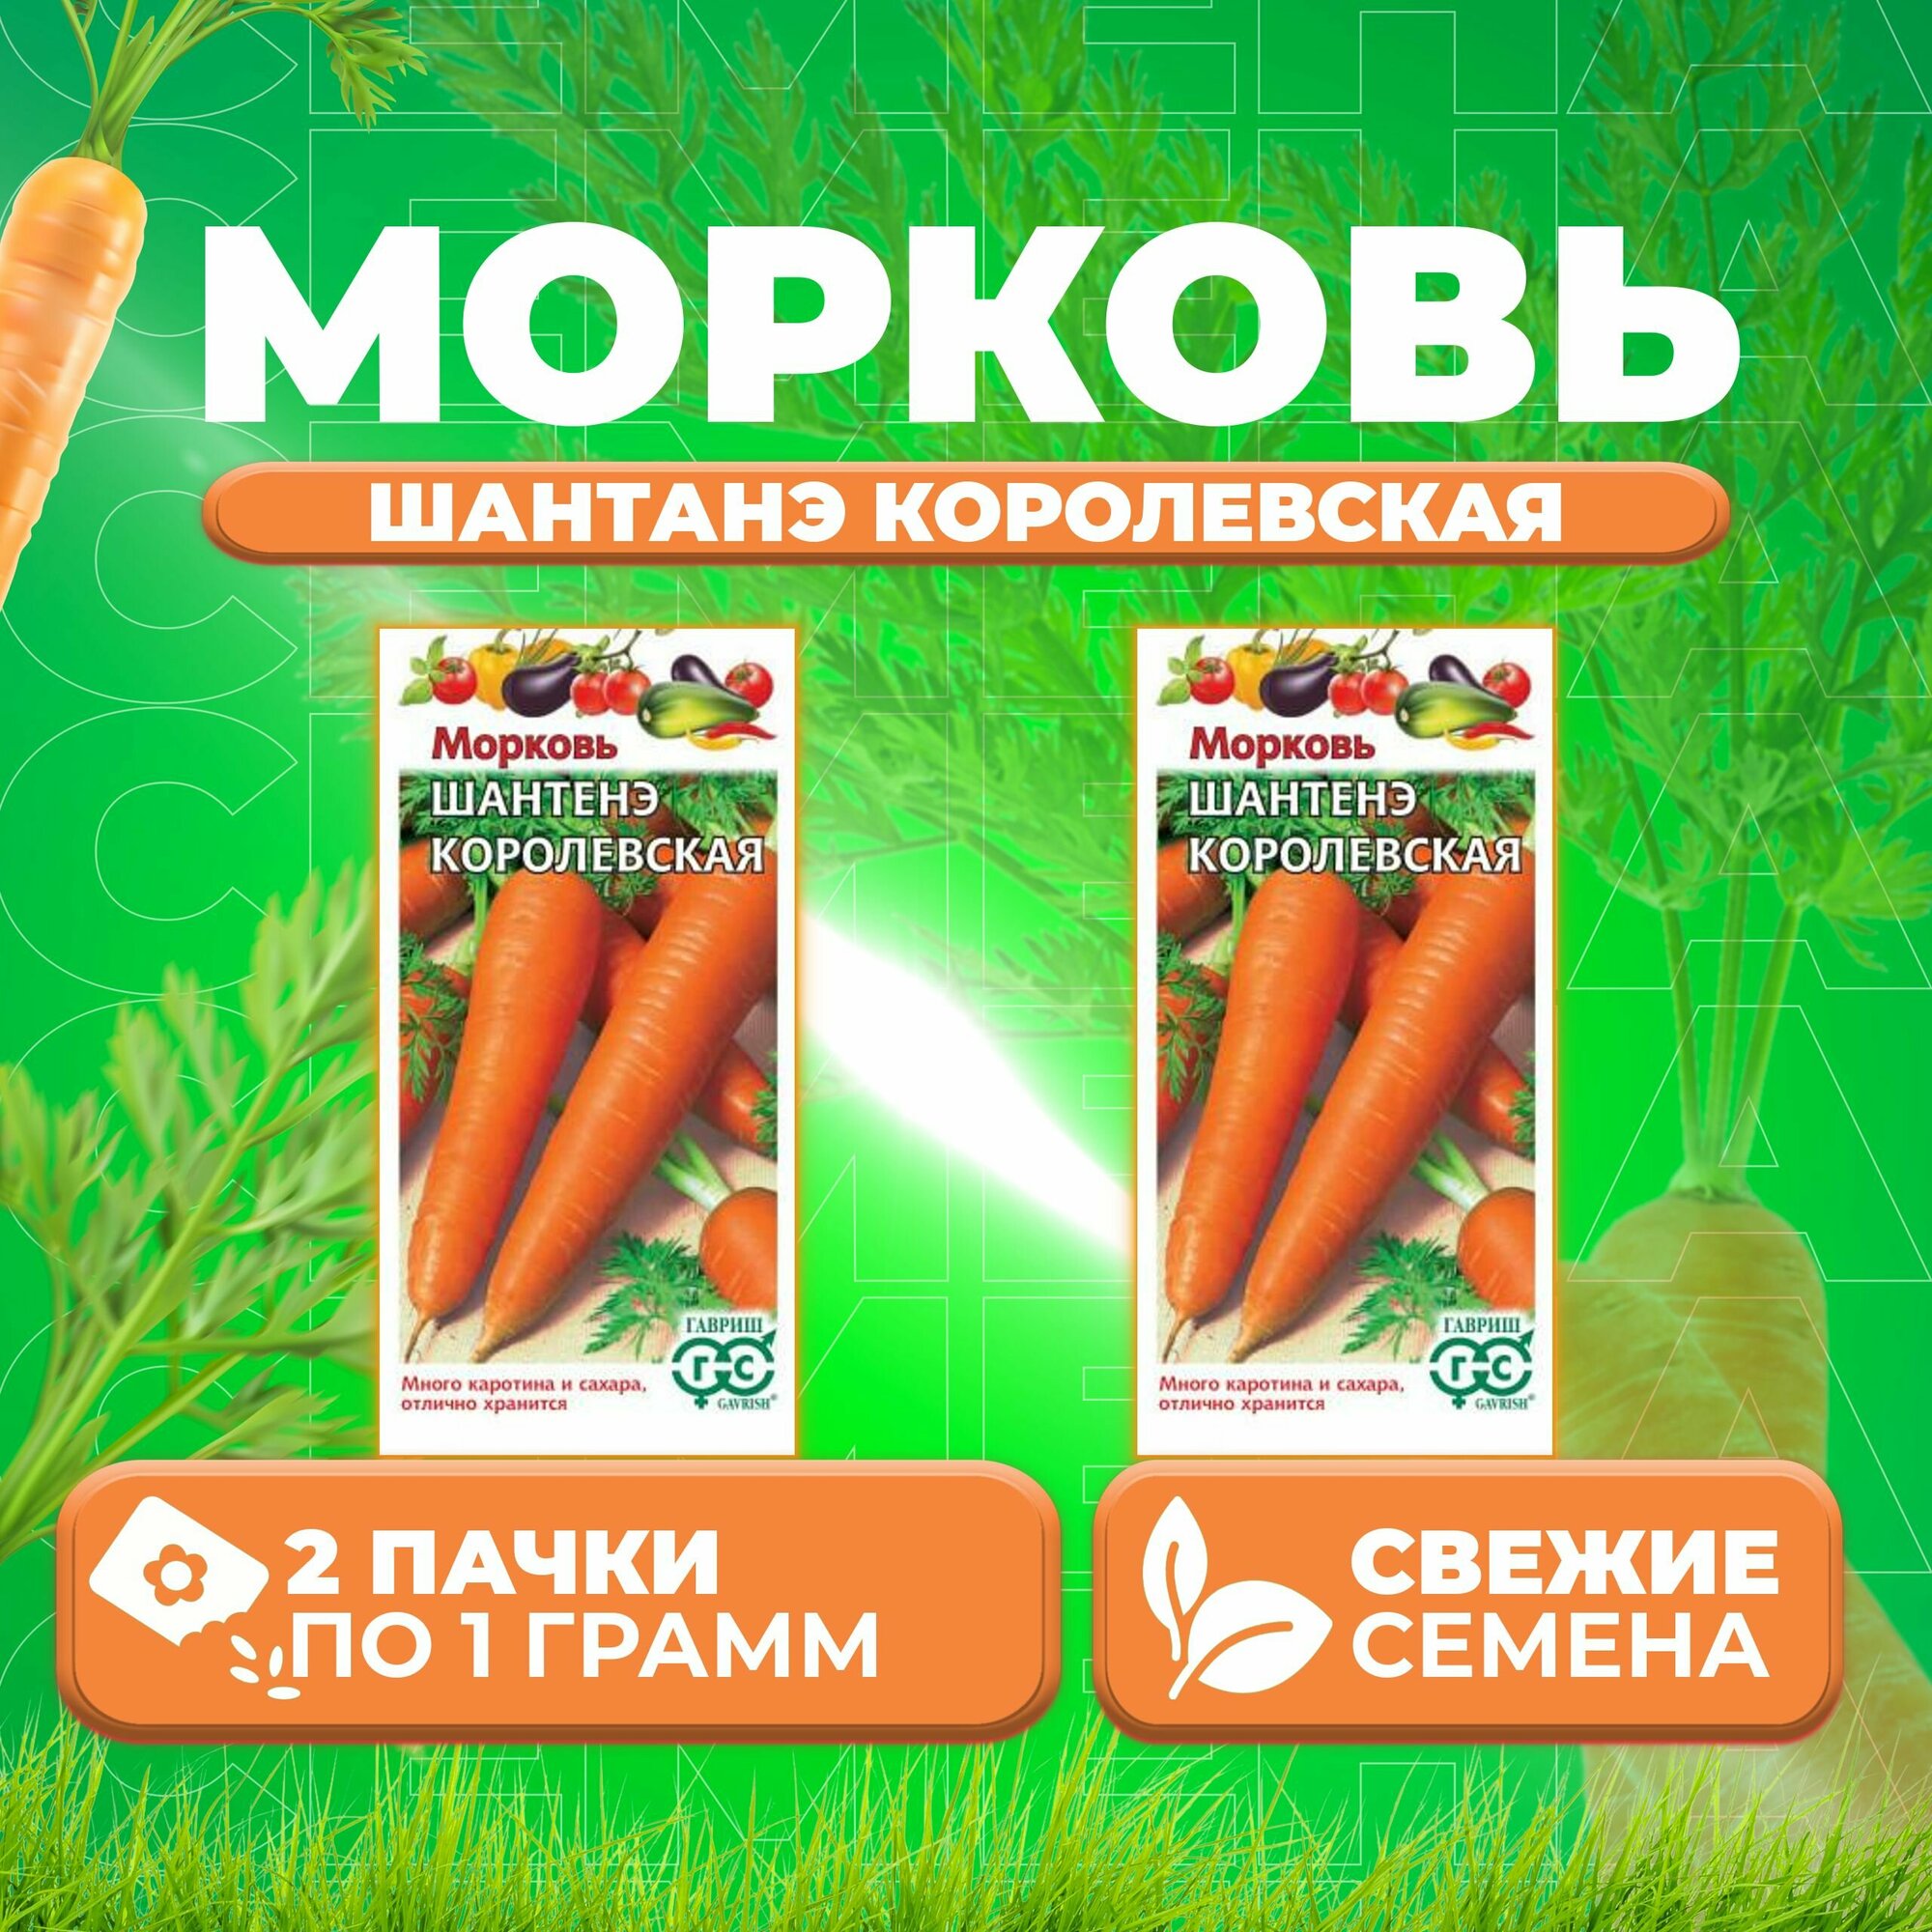 Морковь Шантенэ королевская 10г Гавриш Овощная коллекция (2 уп)